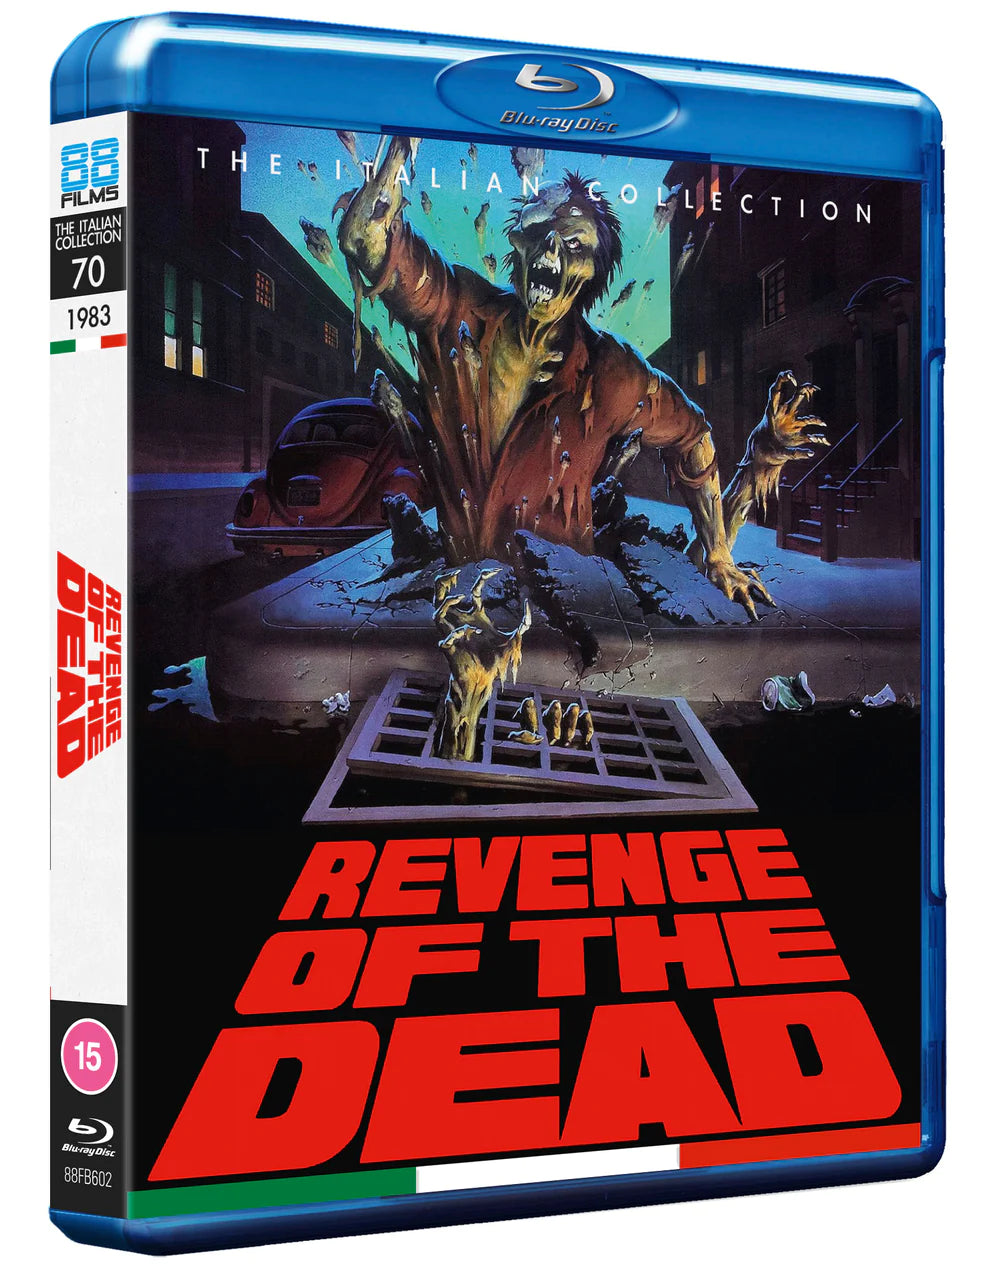 Zeder (Revenge of the Dead) Blu-ray  (88 FIlms UK/Region B)